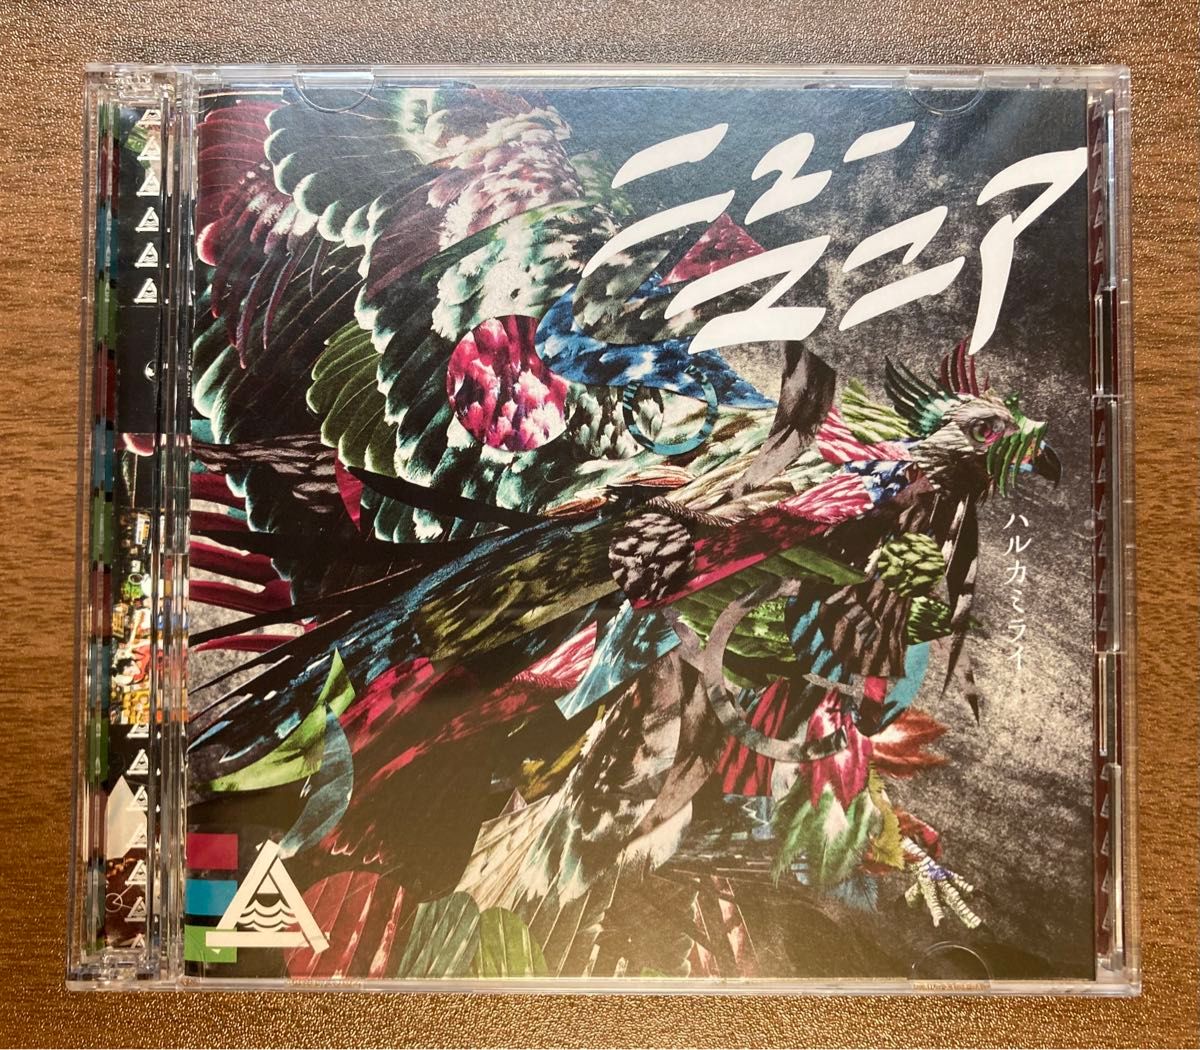 【ライブDVD付】ハルカミライ / album「ニューマニア」初回限定盤 CD